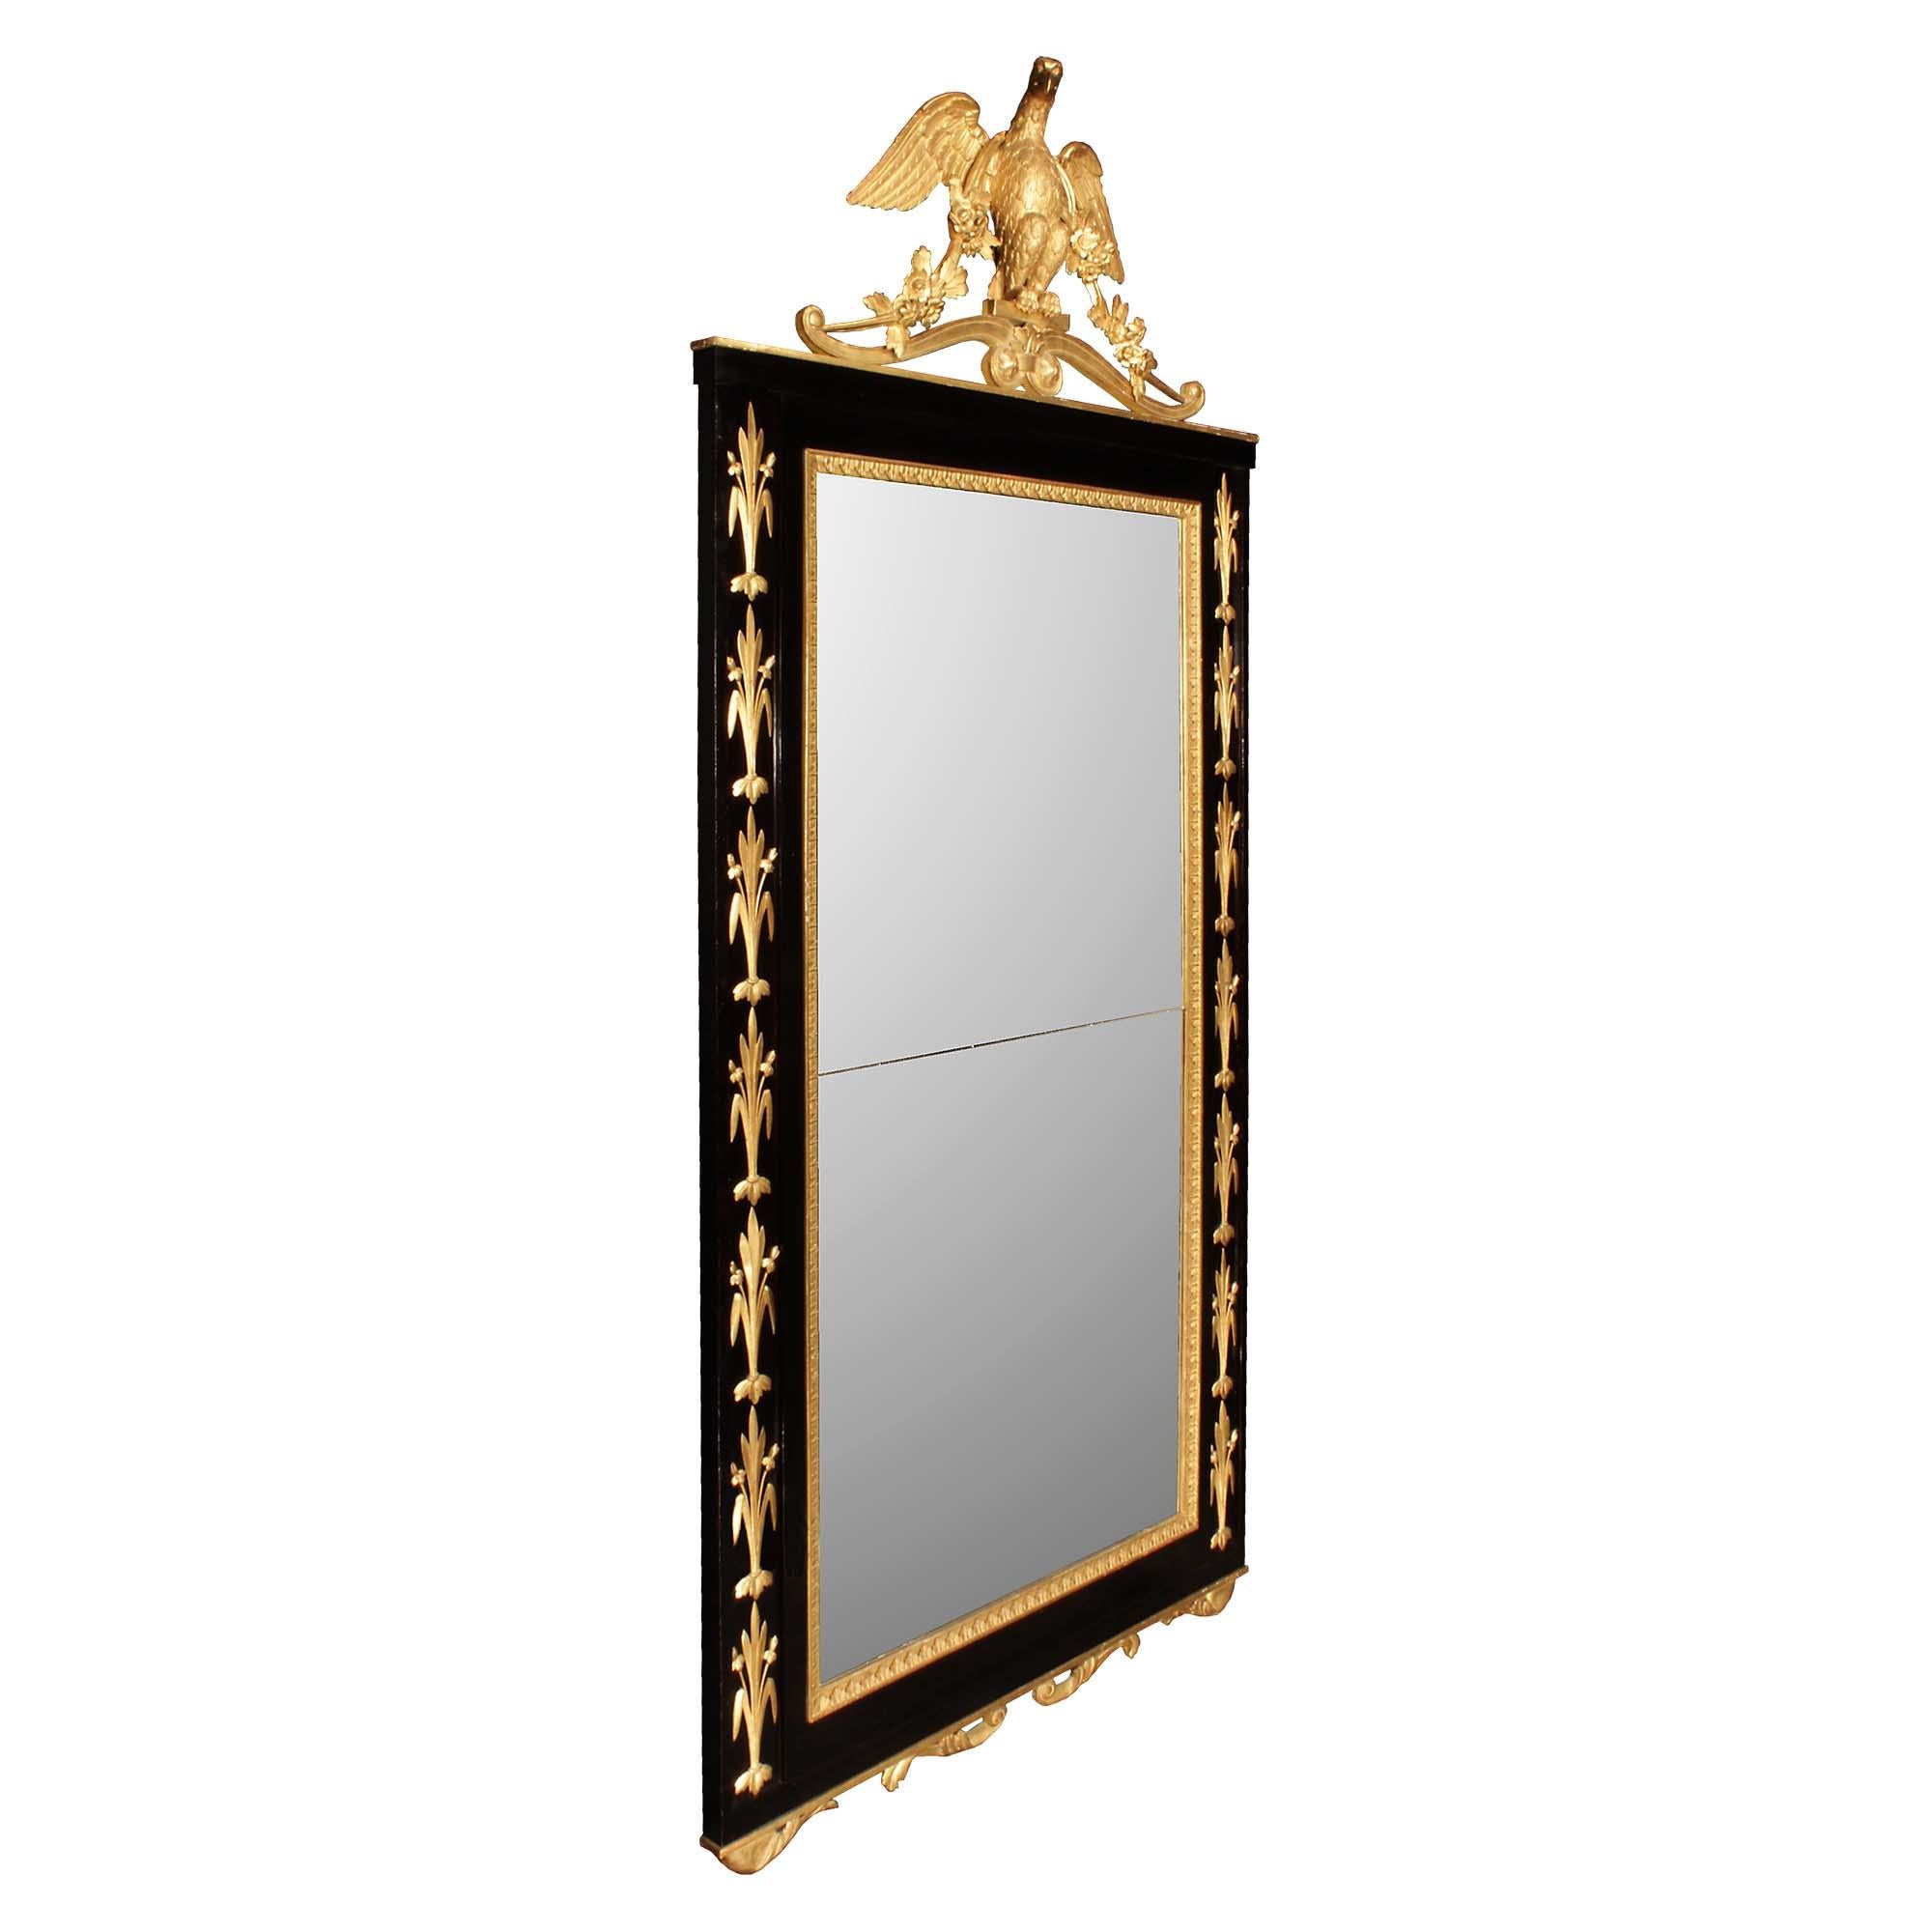 Superbe miroir italien néo-classique du début du XIXe siècle en ébène et bois doré. La plaque de miroir originale se trouve dans un cadre en ébène avec une bordure florale en bois doré sculpté, et un panneau en retrait de chaque côté présentant des